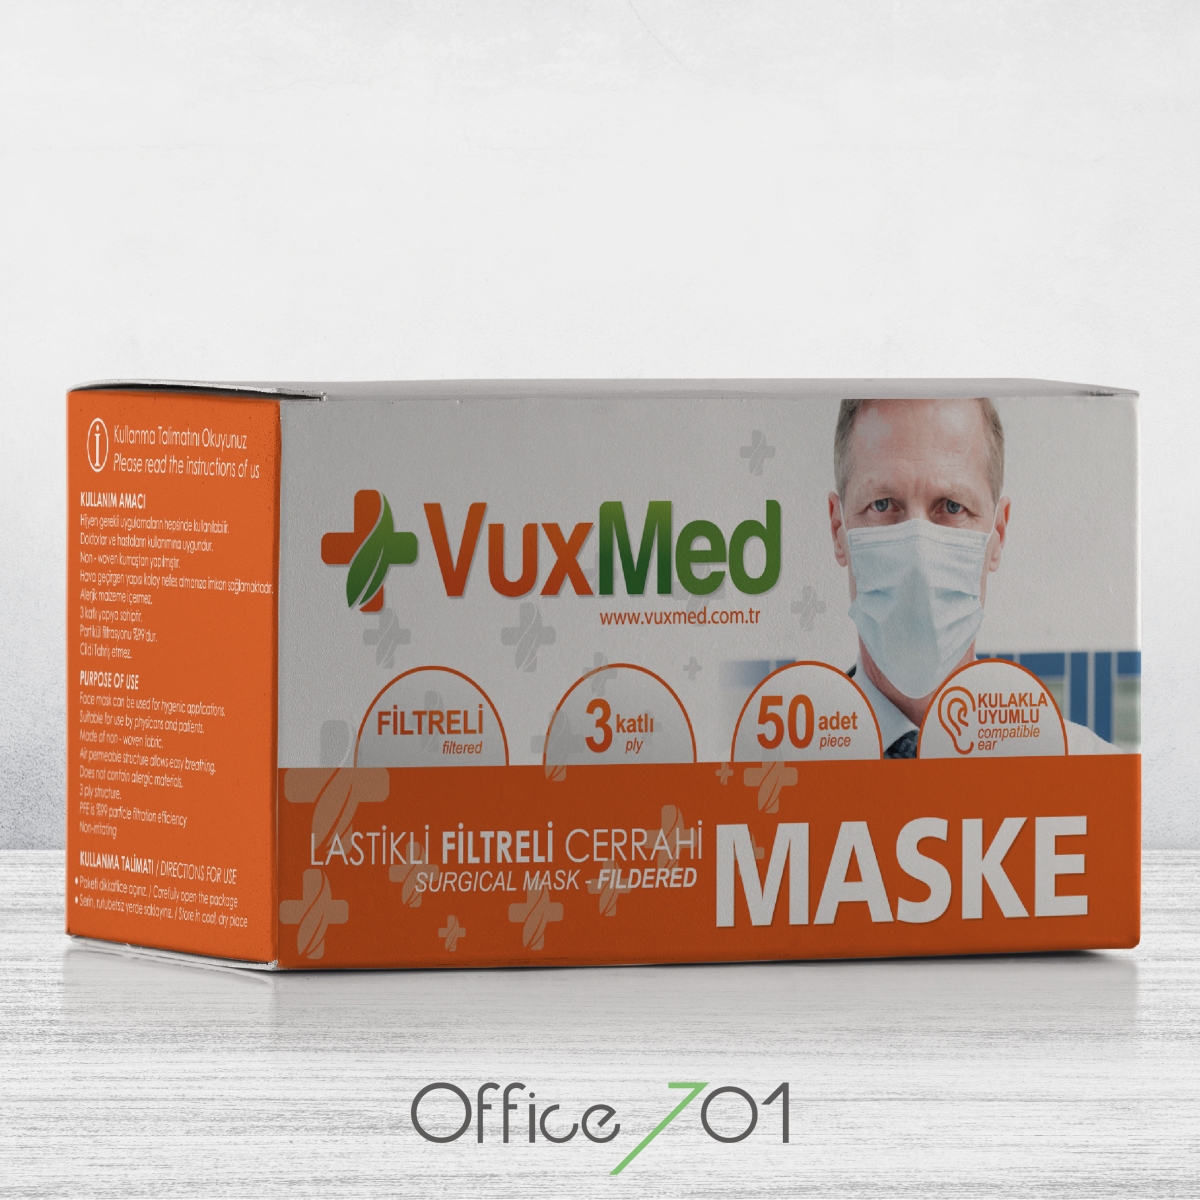 Office701 | Vuxmed | Mask Package Design